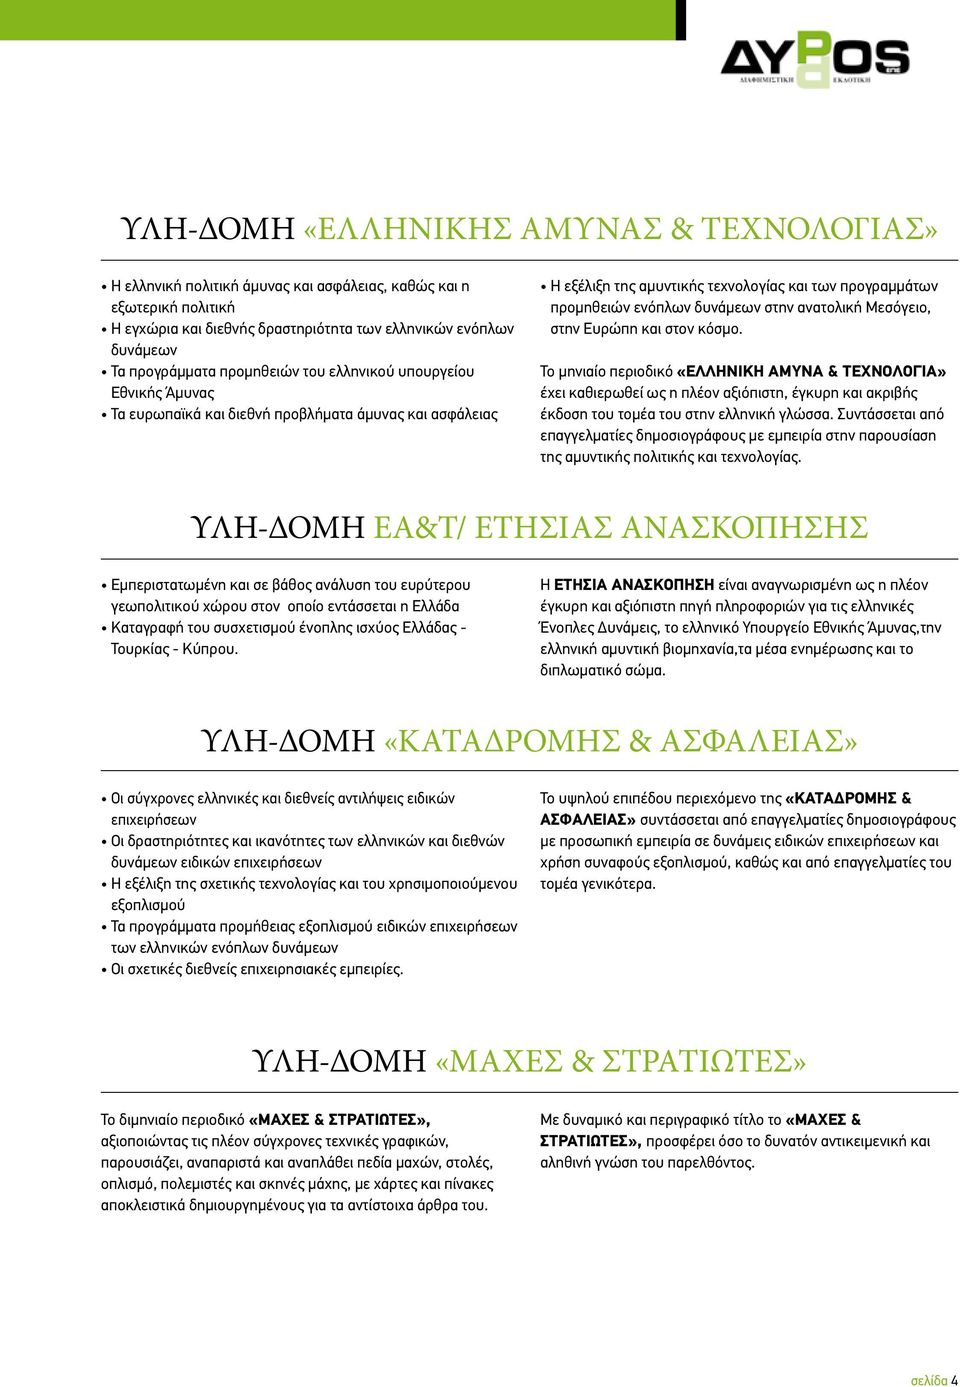 ανατολική Μεσόγειο, στην Ευρώπη και στον κόσμο. Το μηνιαίο περιοδικό «ΕΛΛΗΝΙΚΗ ΑΜΥΝΑ & ΤΕΧΝΟΛΟΓΙΑ» έχει καθιερωθεί ως η πλέον αξιόπιστη, έγκυρη και ακριβής έκδοση του τομέα του στην ελληνική γλώσσα.